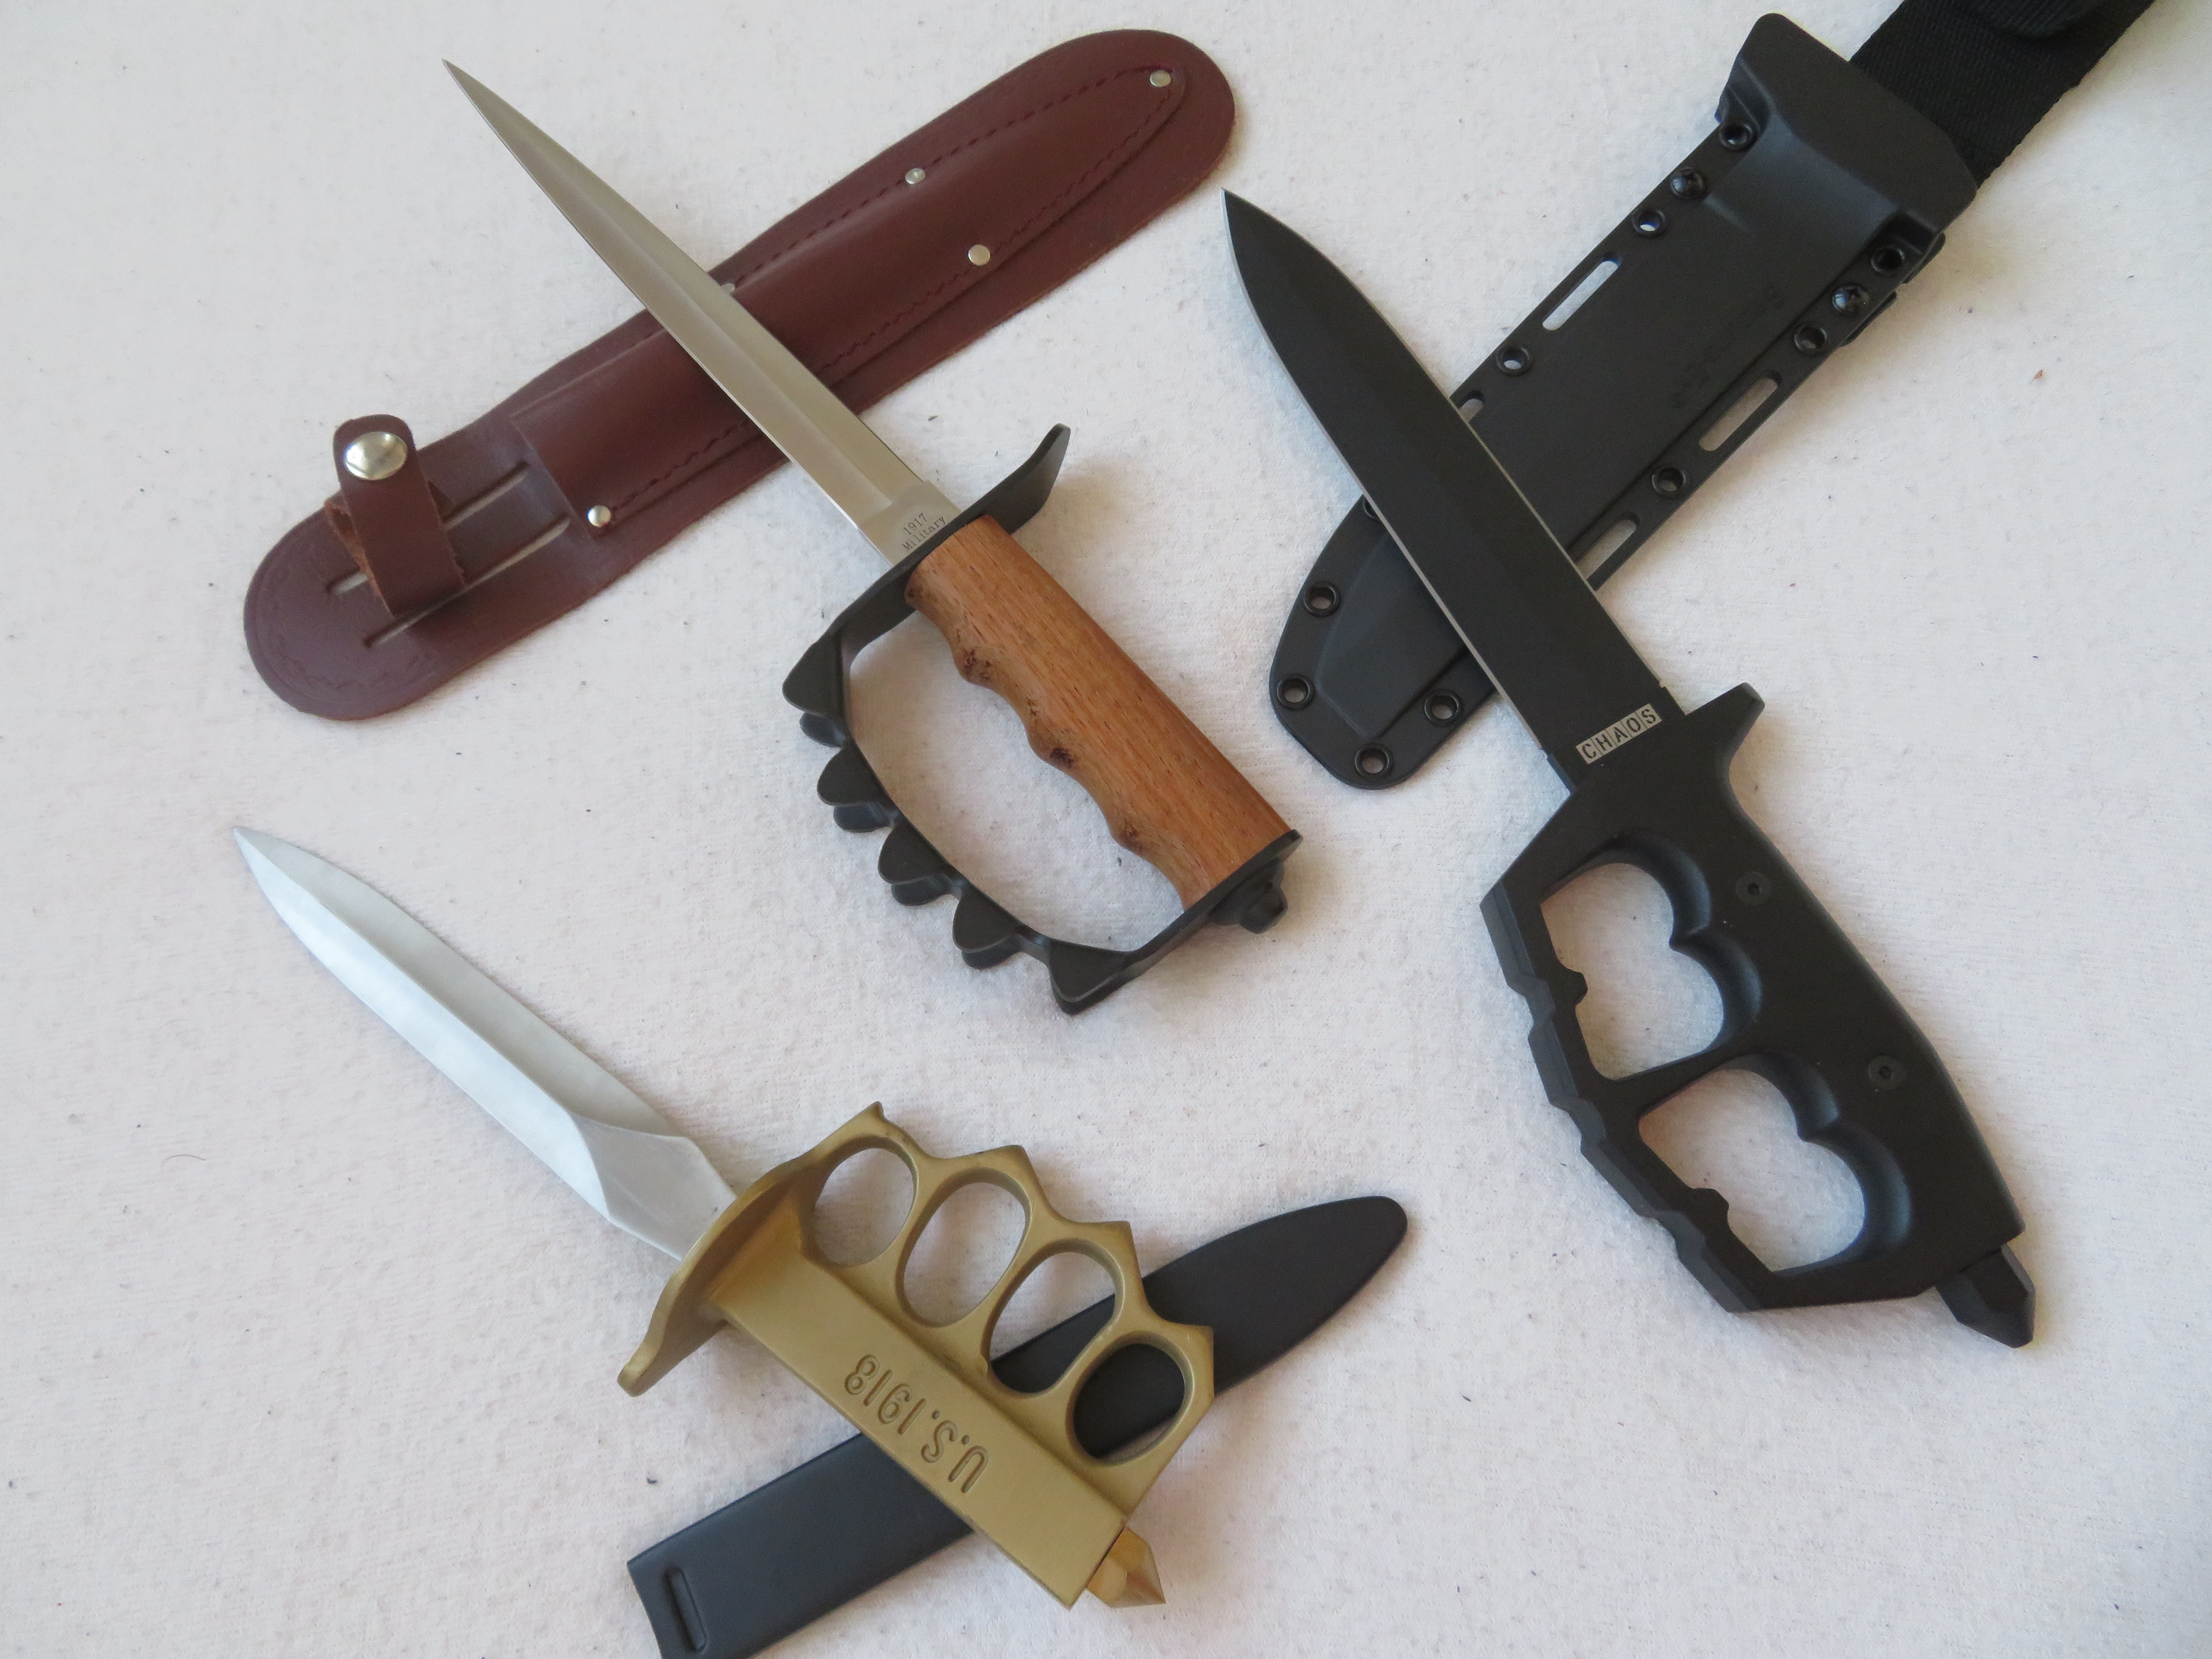 Model CHAOS od společnosti Cold Steel spolu s replikami zákopových nožů z I. světové války.